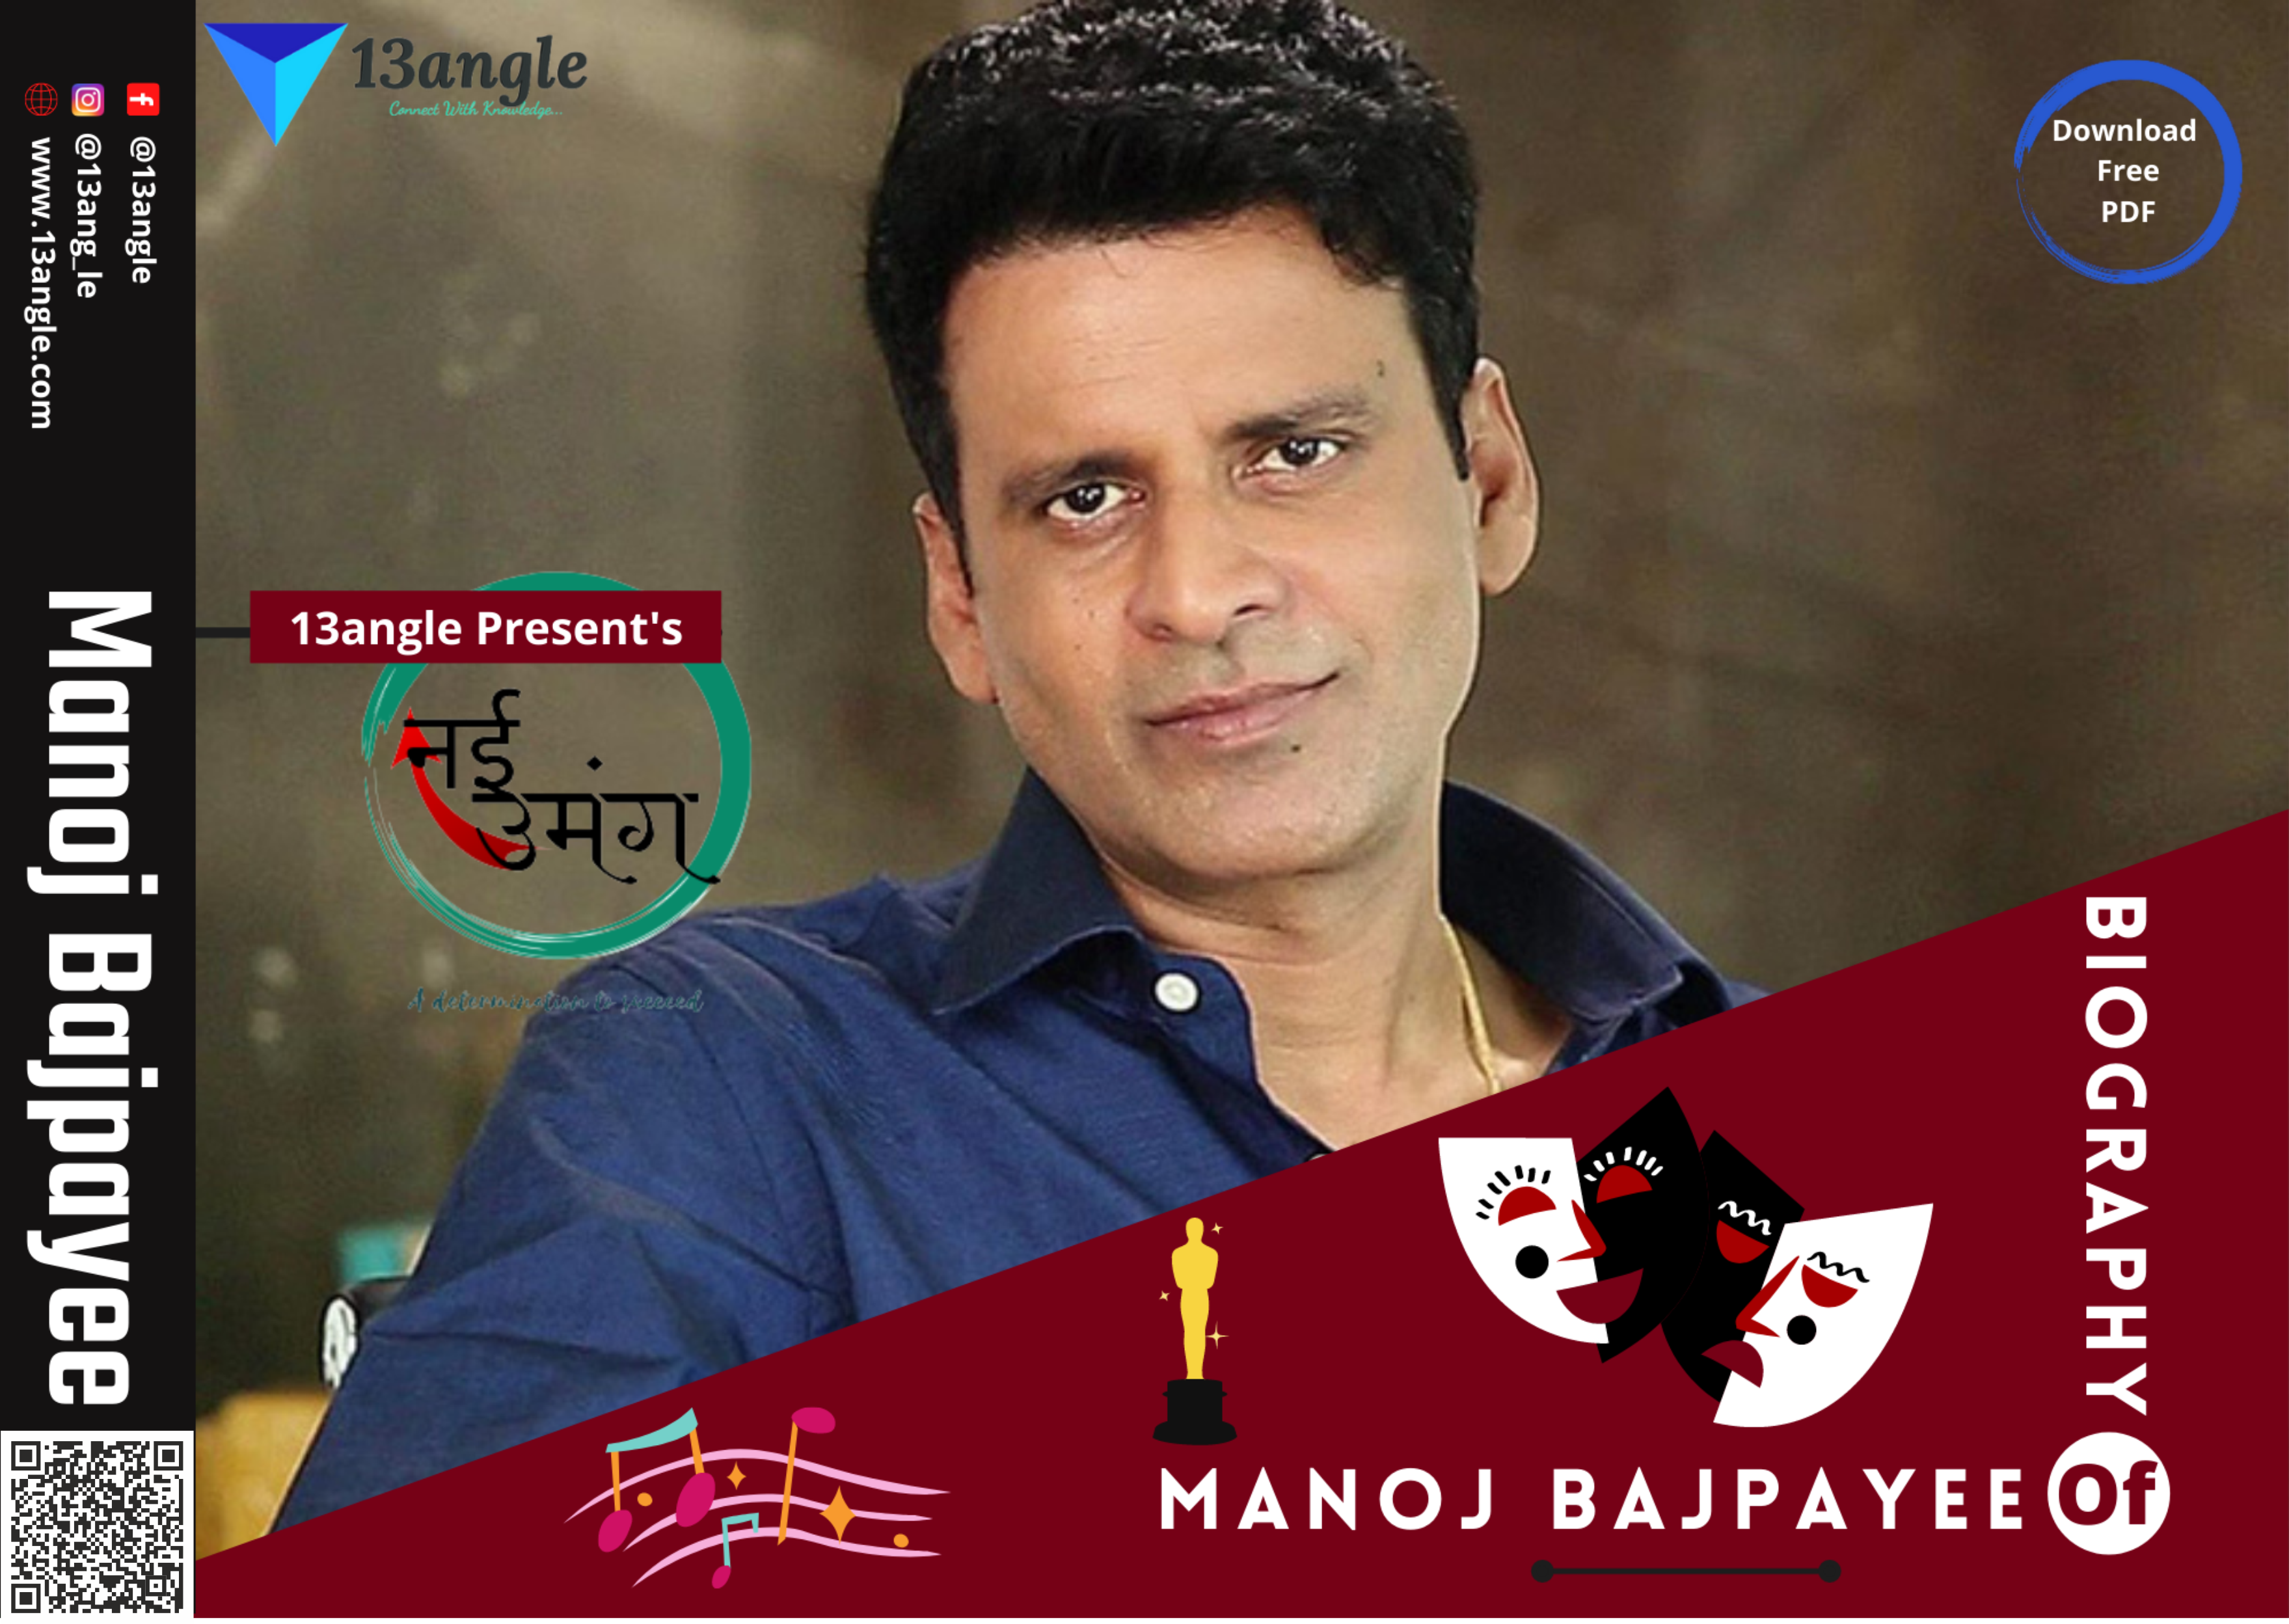 Biography Of Manoj Bajpayee- 13angle.com